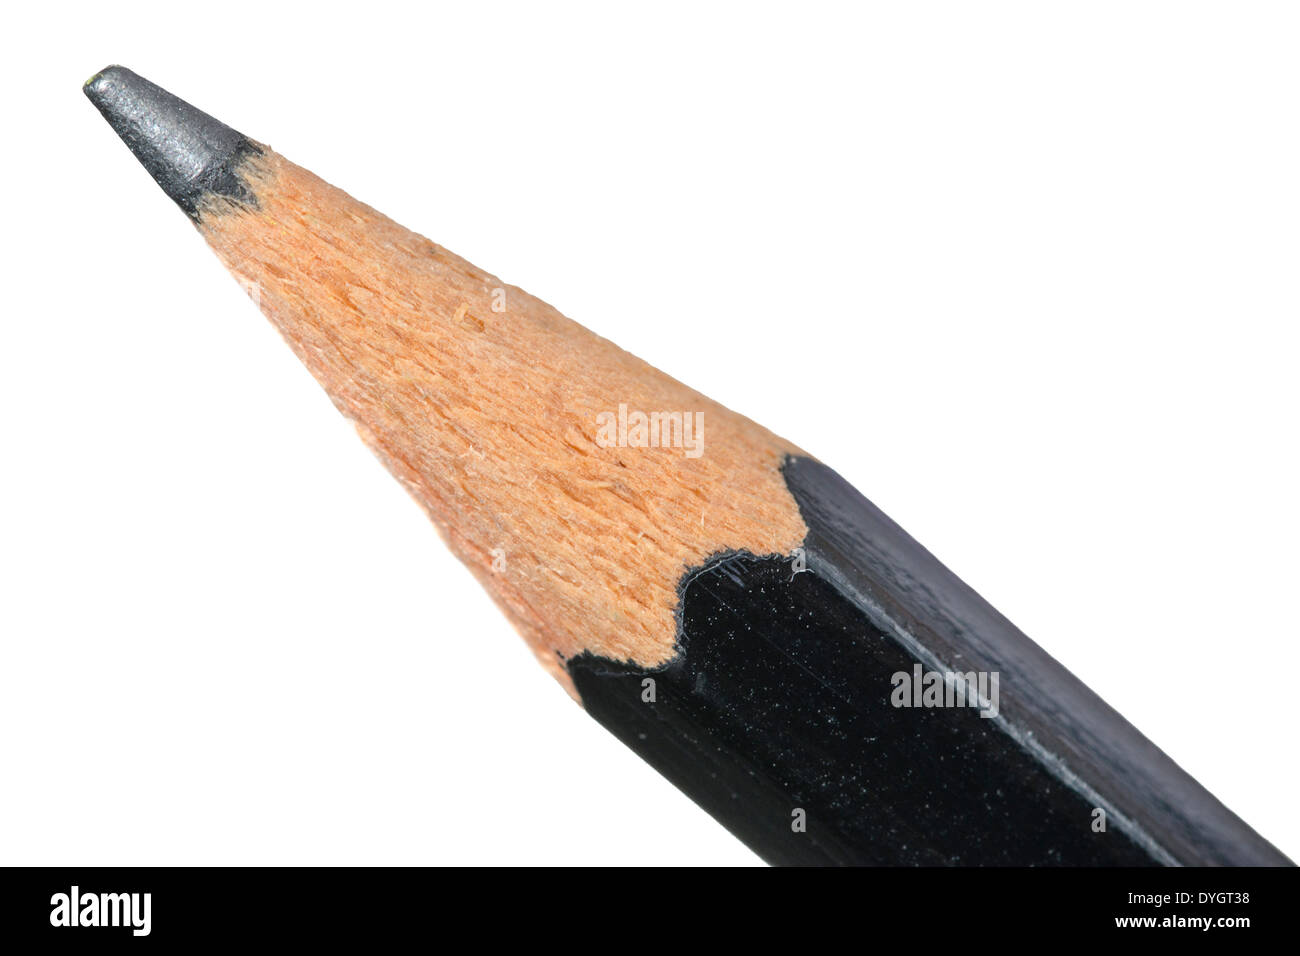 Mina di matita immagini e fotografie stock ad alta risoluzione - Alamy